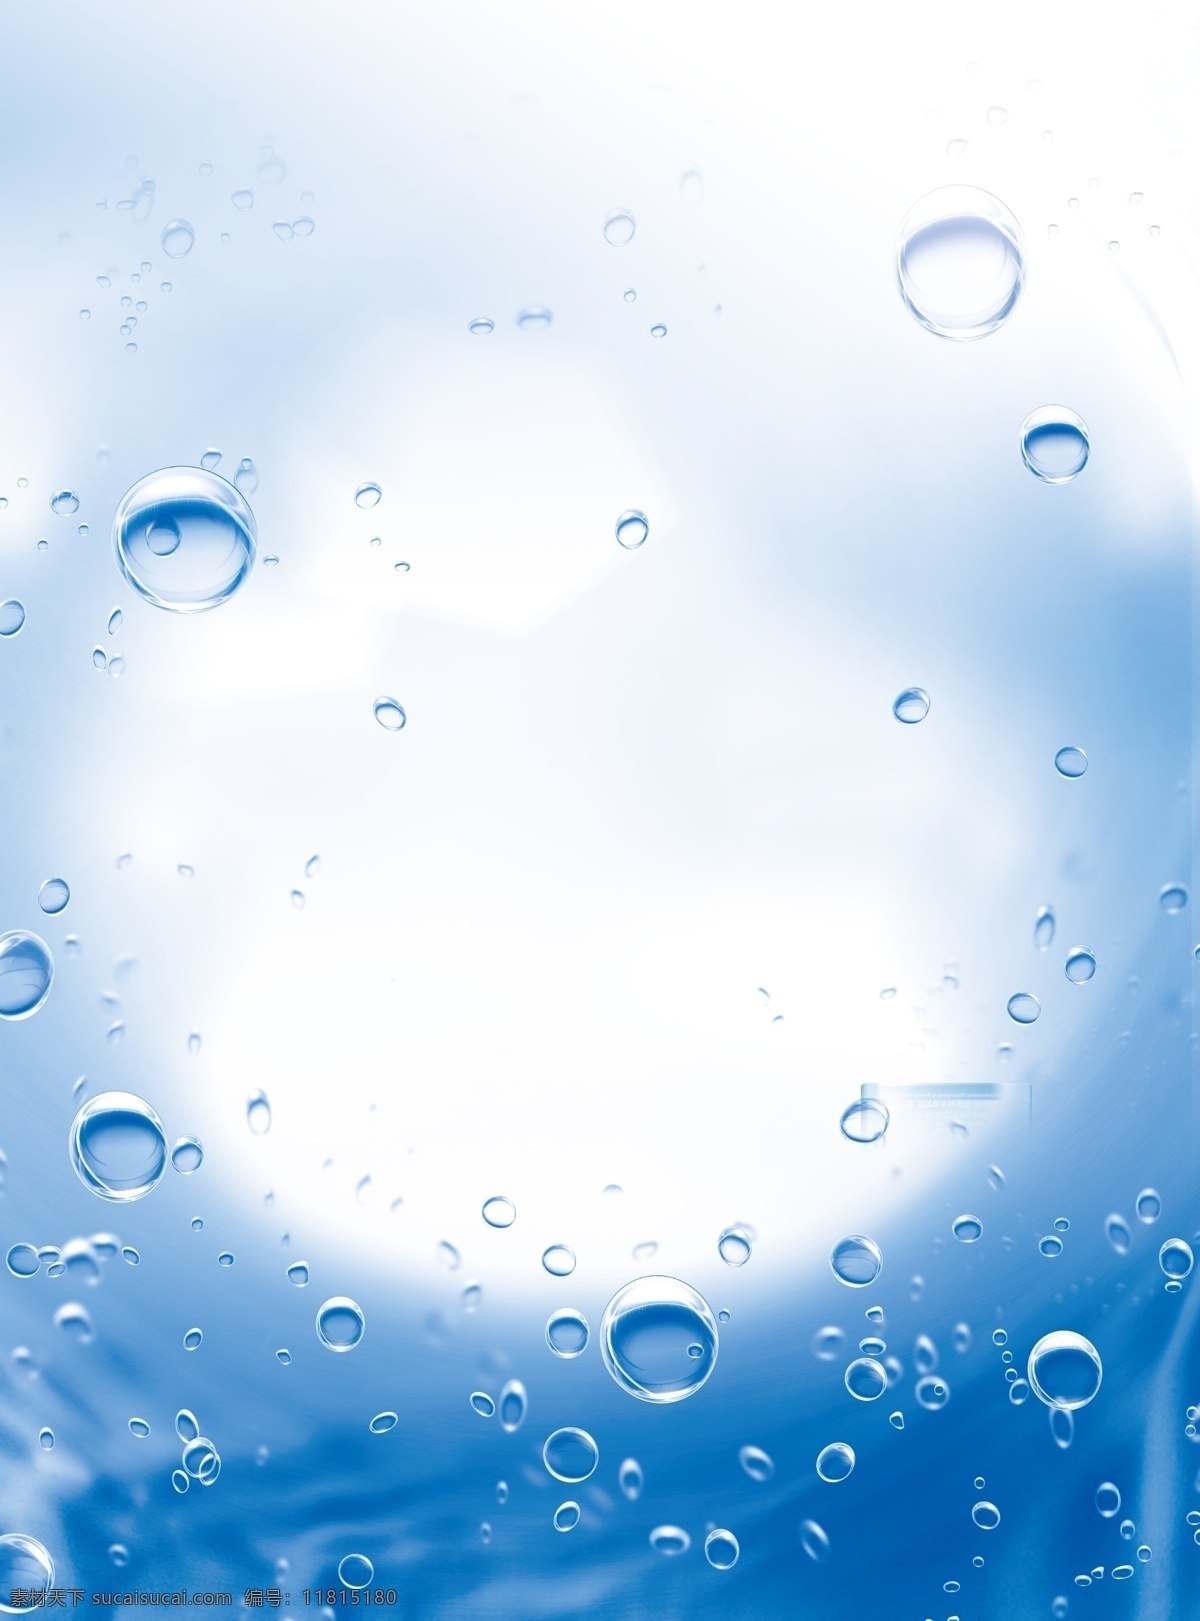 水珠素材 水素材 水 水效果 水花 水面 水波浪 水浪 透明水滴 水滴 水珠 水球 水滴素材 水滴图标 水纹 纹理 水波 水泡